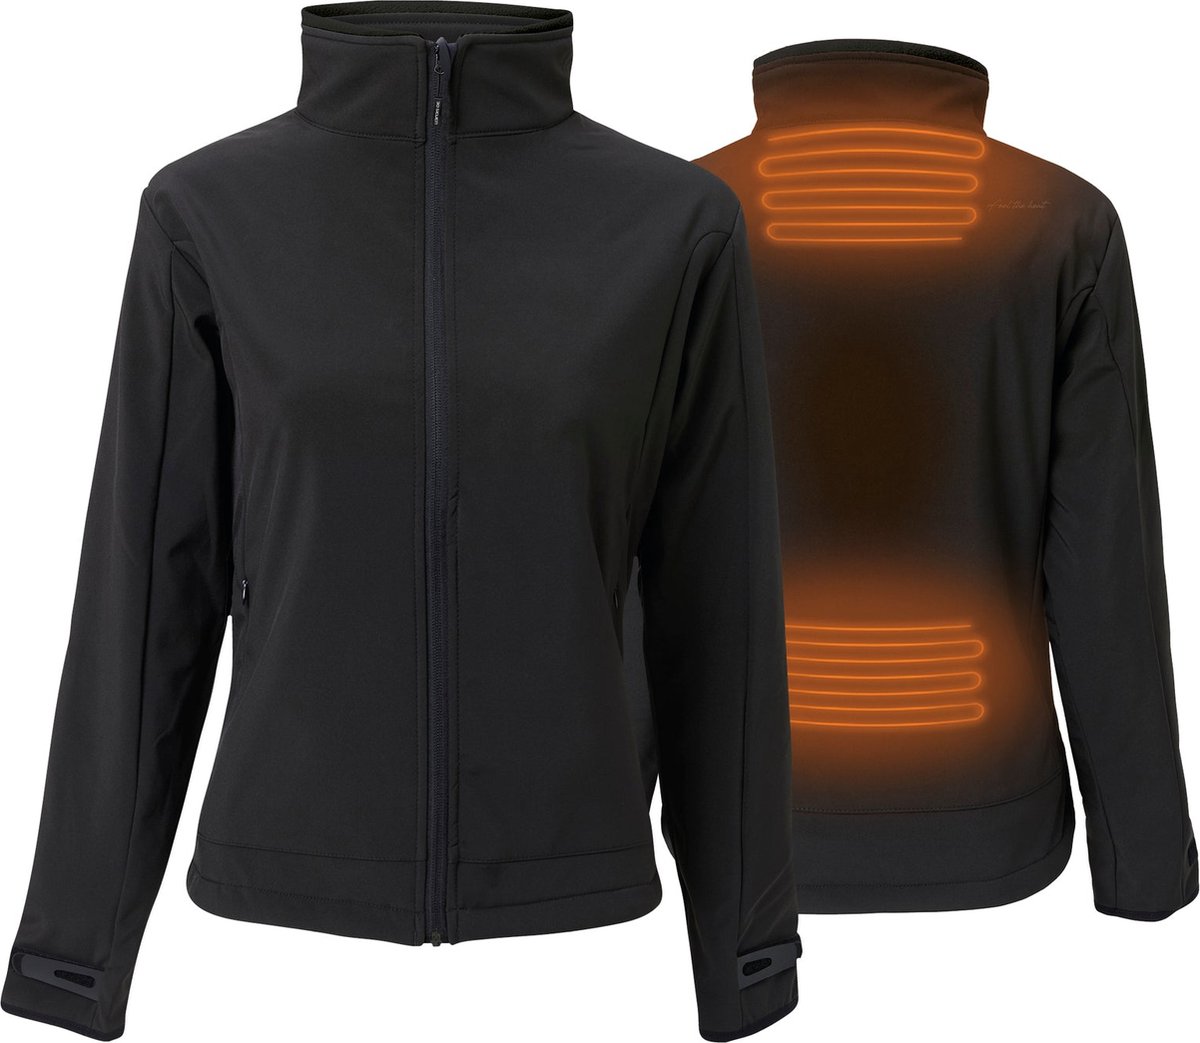 Verwarmde Softshell Jas - Slim Fit voor dames - Met extra warme fleecevoering - Rapid power technologie - zwart